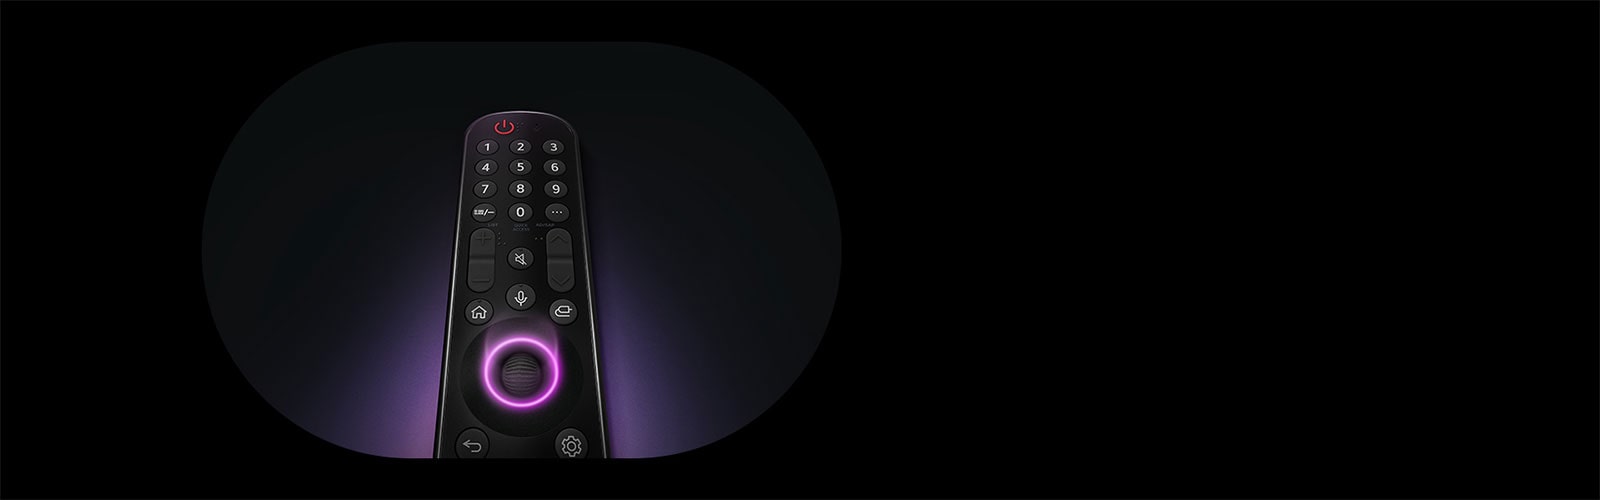 Điều khiển từ xa LG Magic có nút tròn ở giữa, khi ánh sáng màu tím neon phát ra xung quanh nút để làm nổi bật chúng. Ánh sáng tím dịu bao quanh điều khiển từ xa trên nền đen.